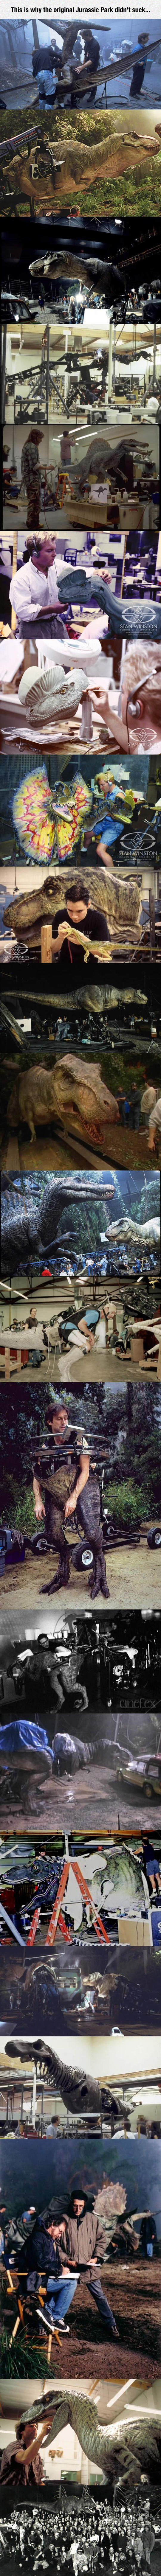 The reason Jurassic Park didn't suck.